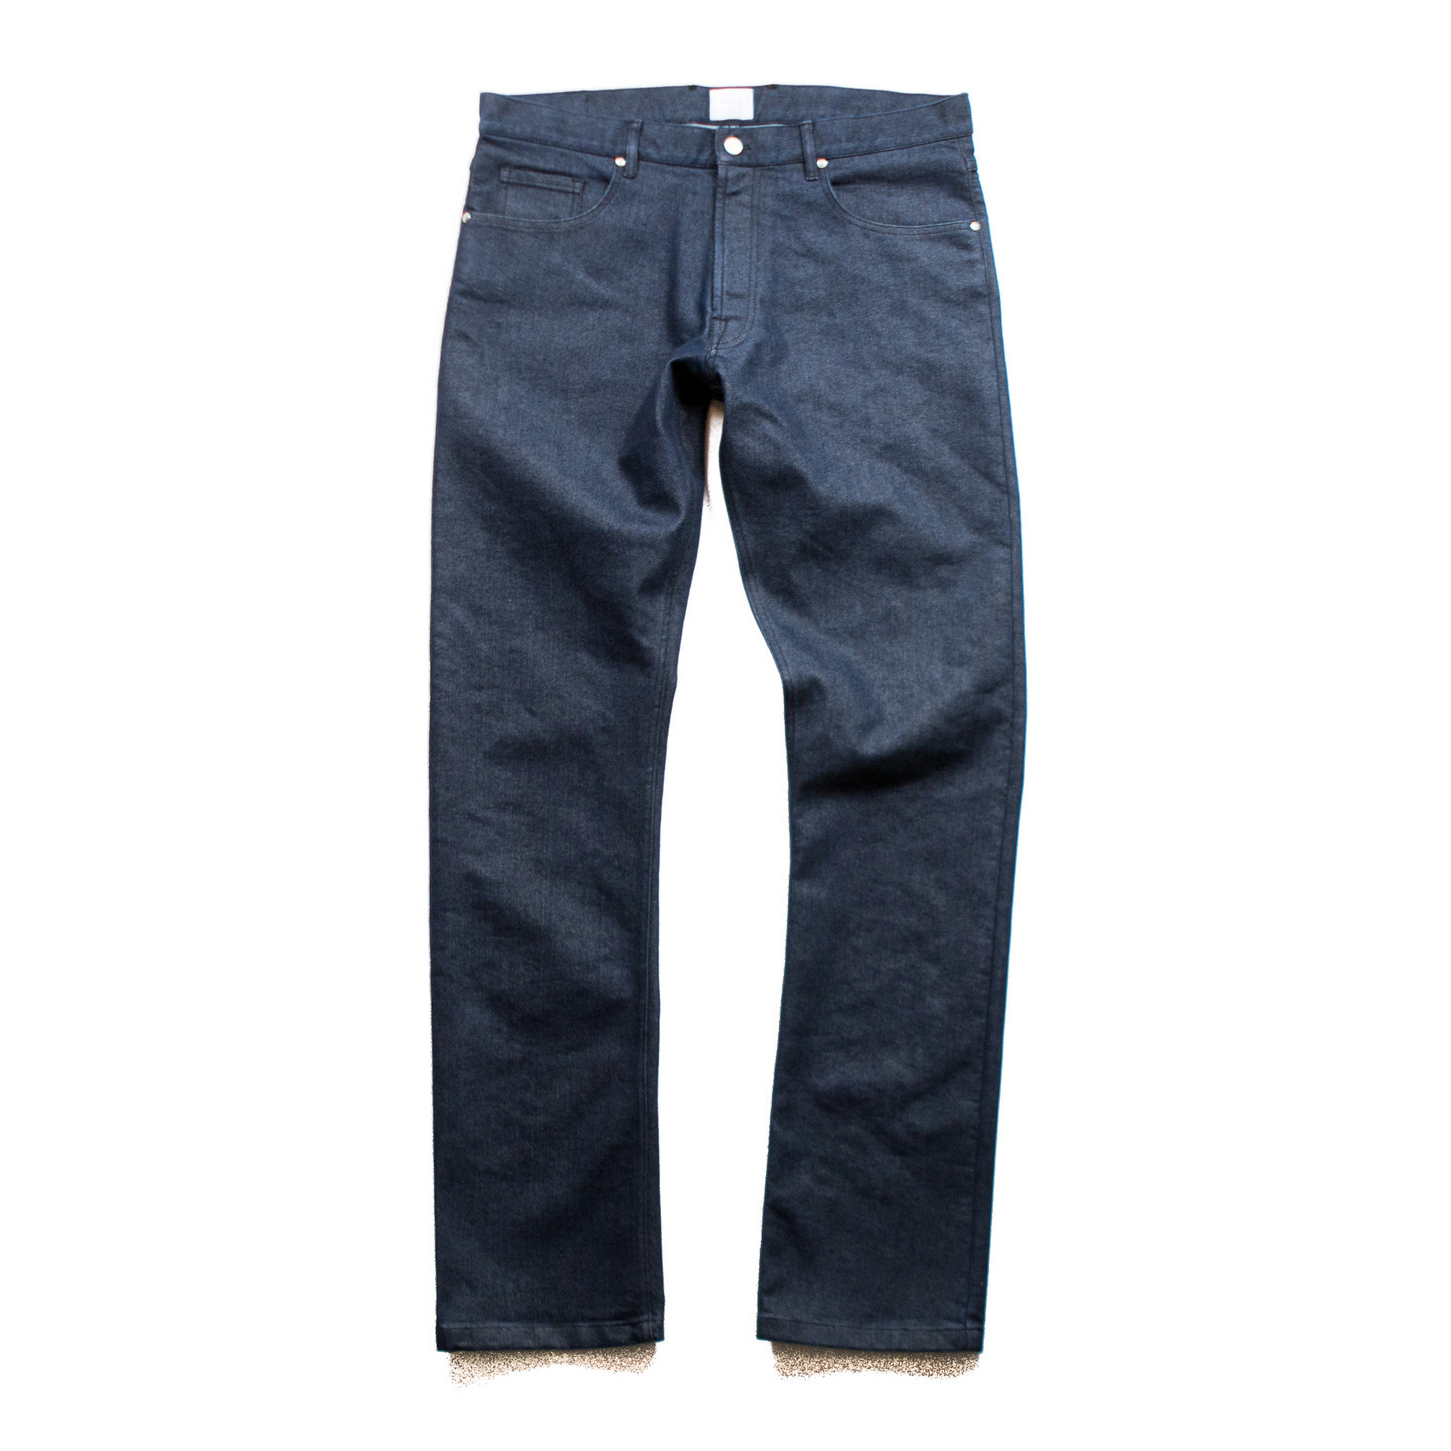 Blueprint Commuter Jeans - 12.5 oz